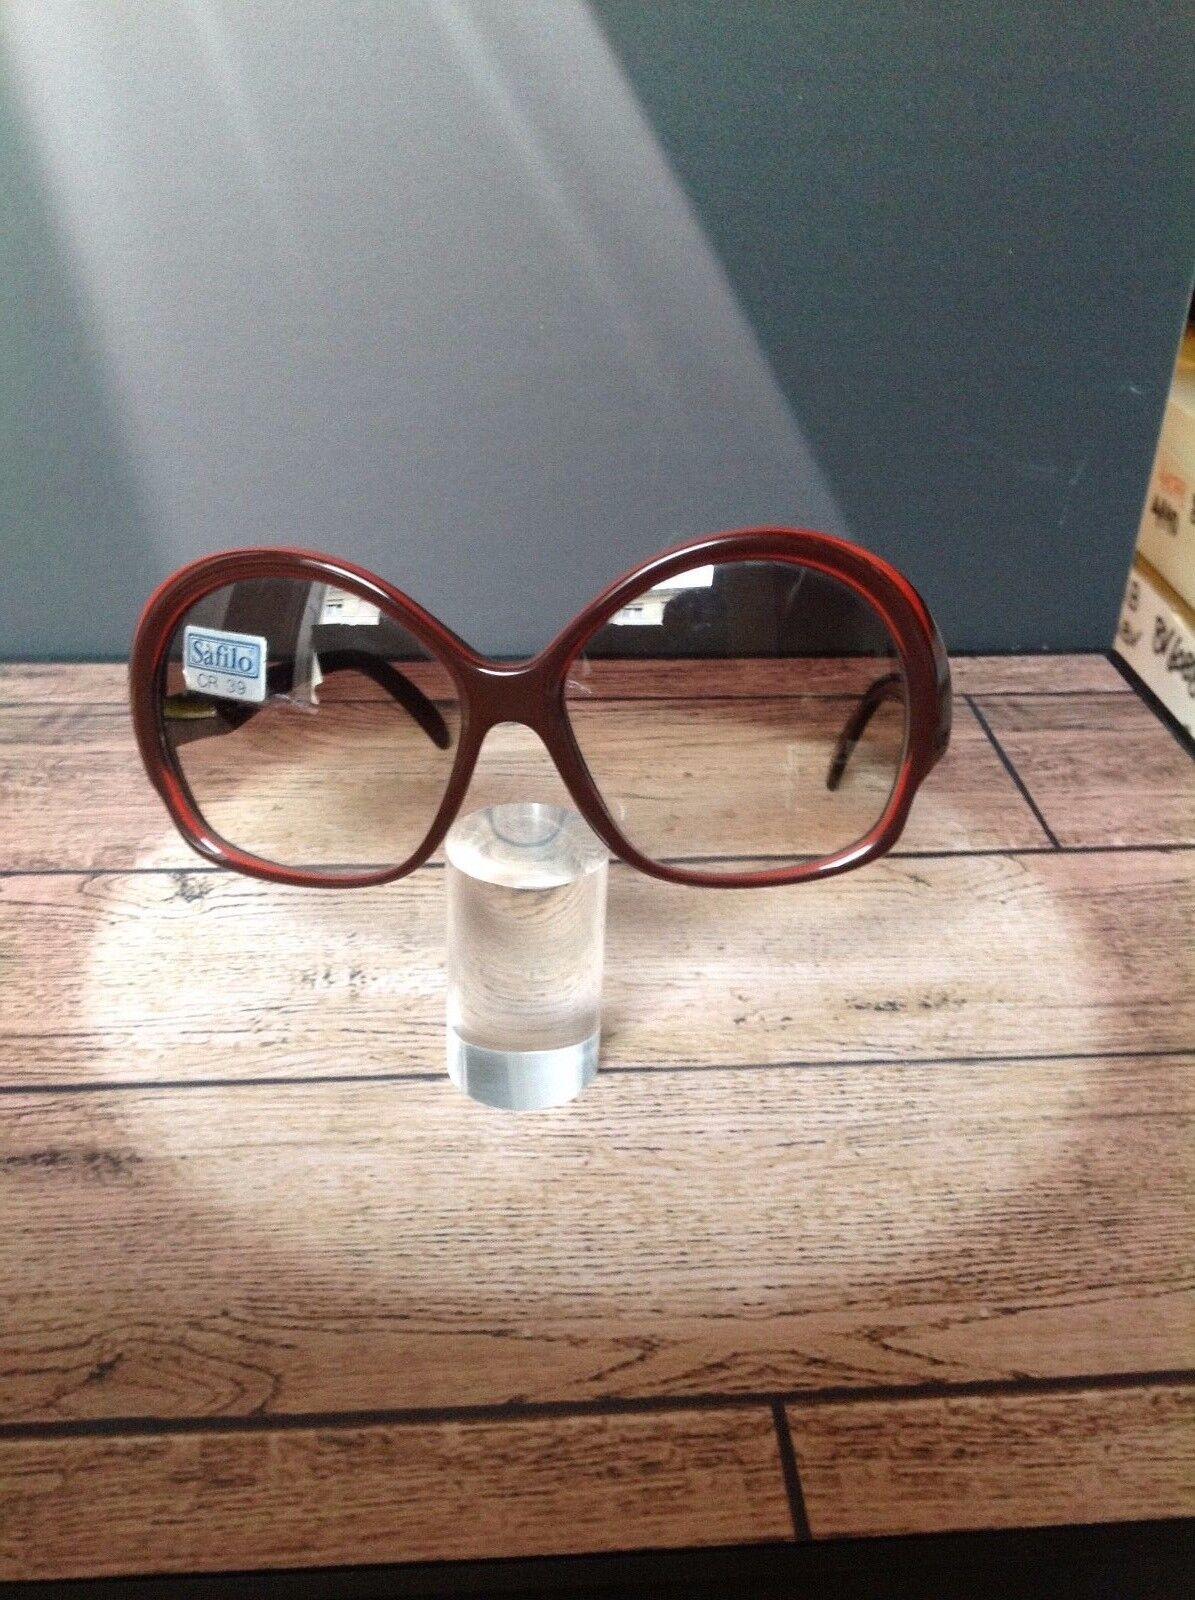 occhiale sole SAFILO vintage model HIT23 SUNGLASSES LUNETTES SONNENBRILLEN Italy